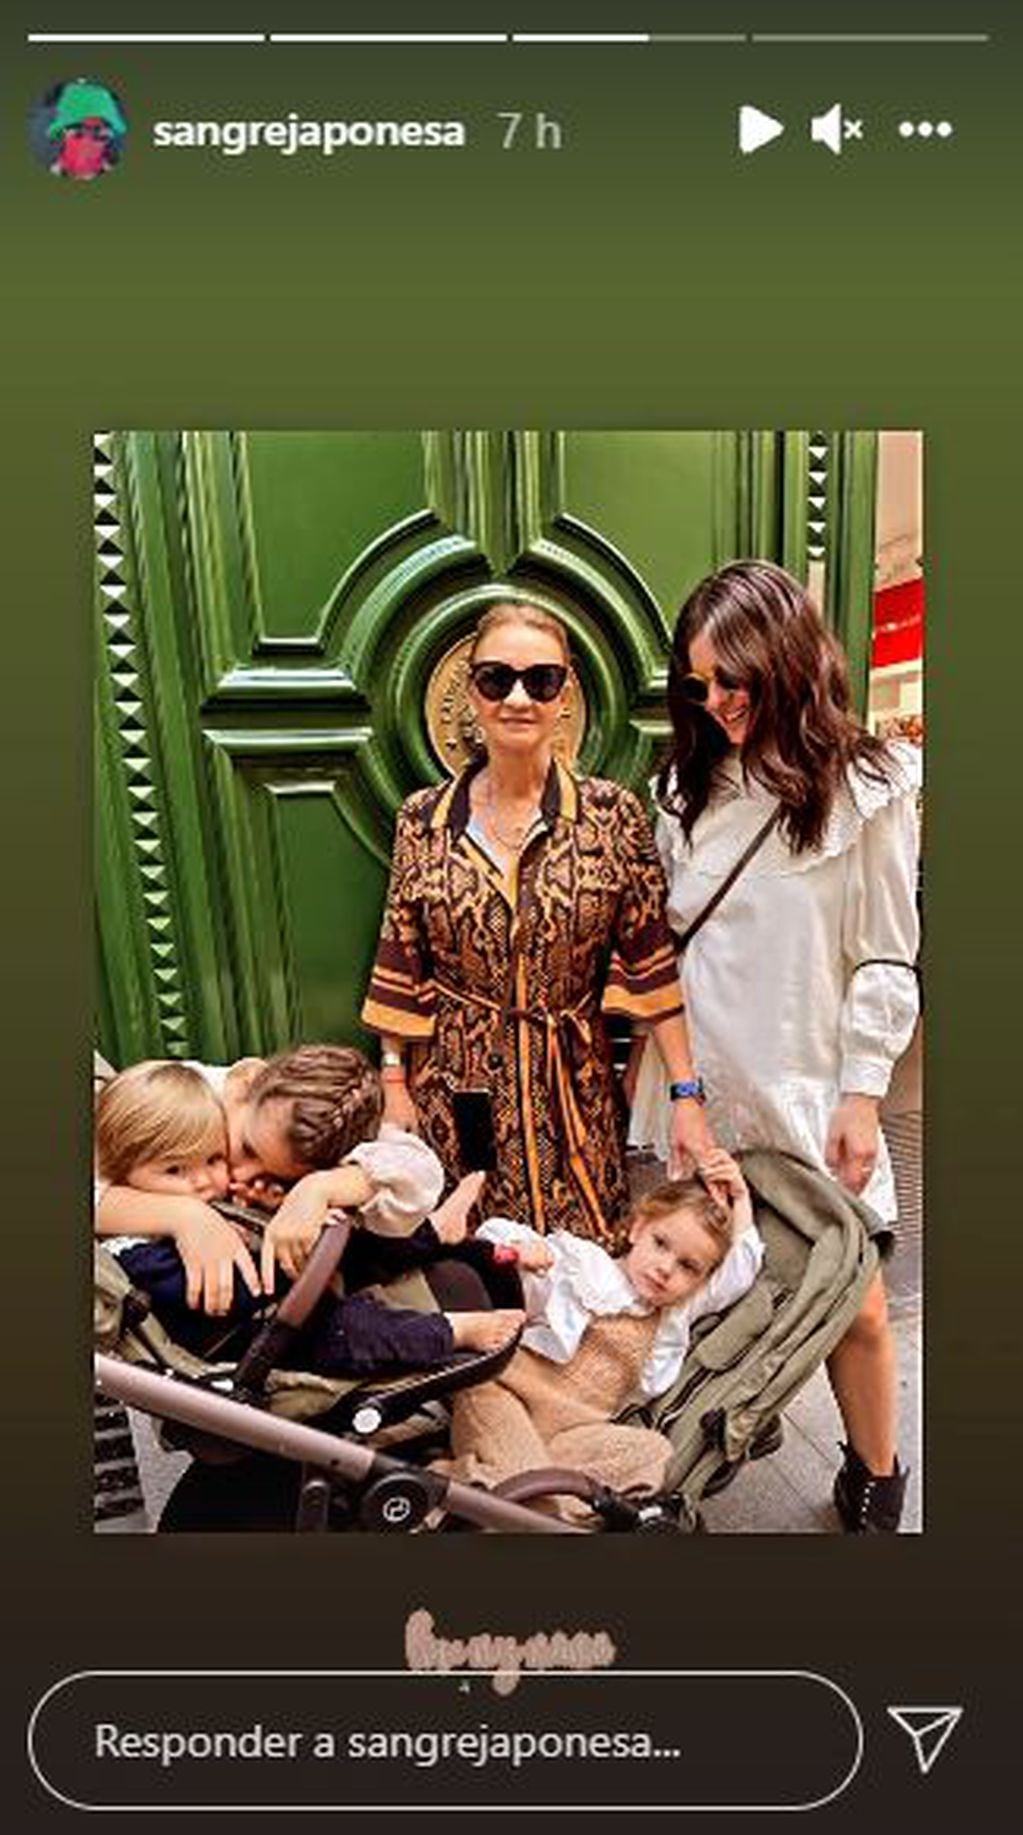 Suárez festeja el Día de la Madre en Madrid junto a su mamá, Marcela Riveiro y sus tres hijos: Rufina, Magnolia y Amancio.
(Instagram @sangrejaponesa)